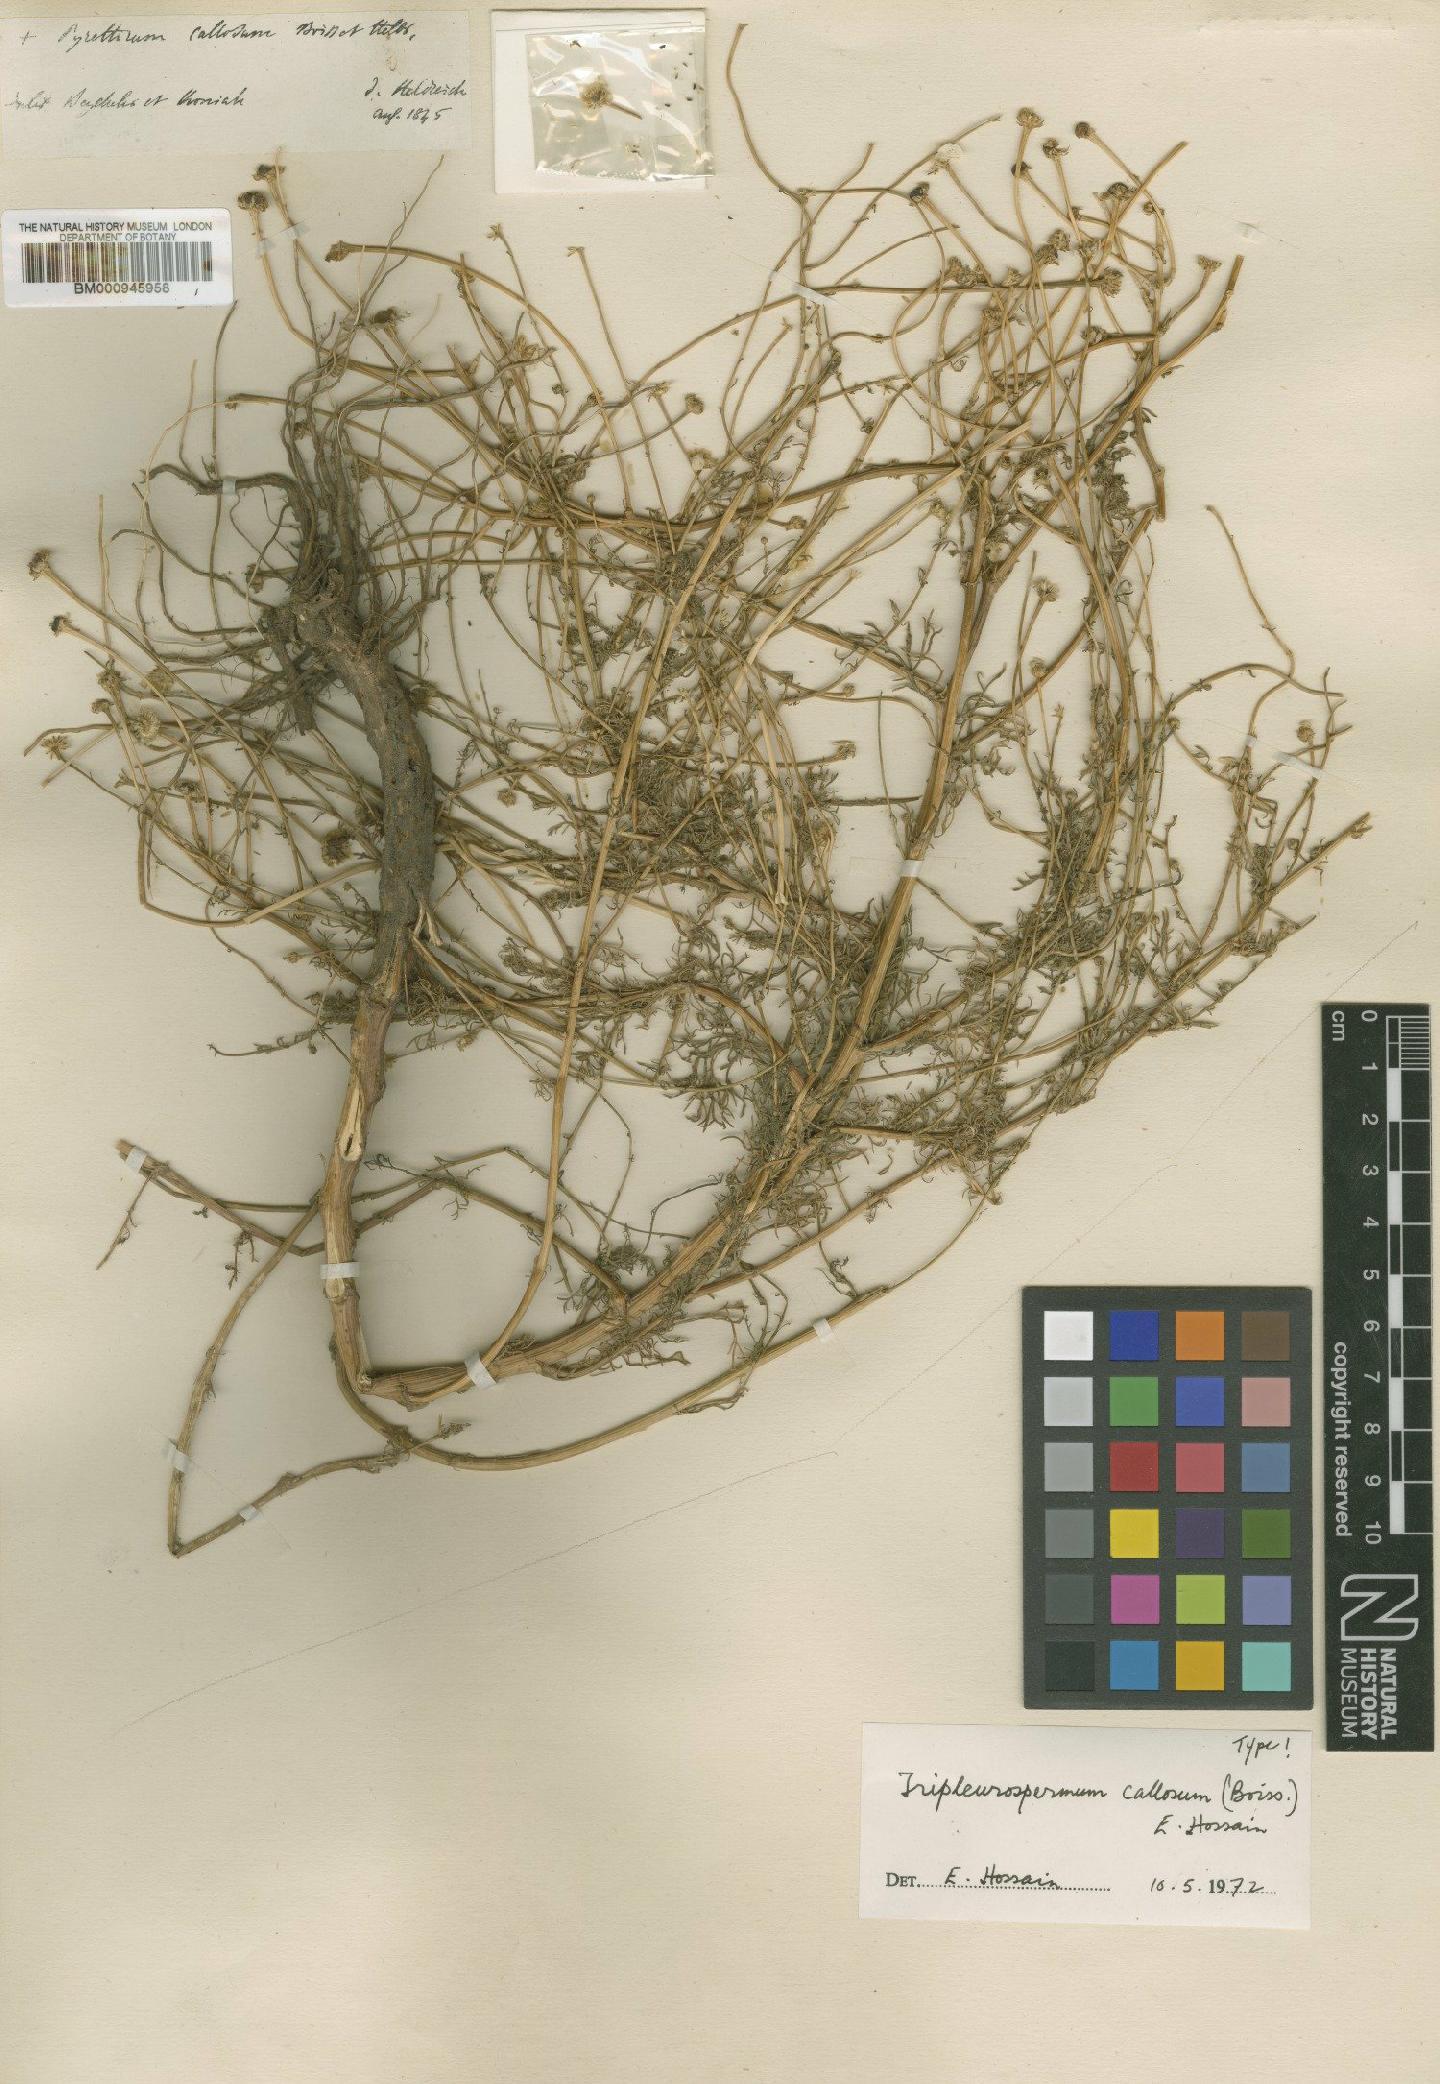 To NHMUK collection (Tripleurospermum callosum (Boiss. & Heldr.) E.Hossain; Type; NHMUK:ecatalogue:473934)